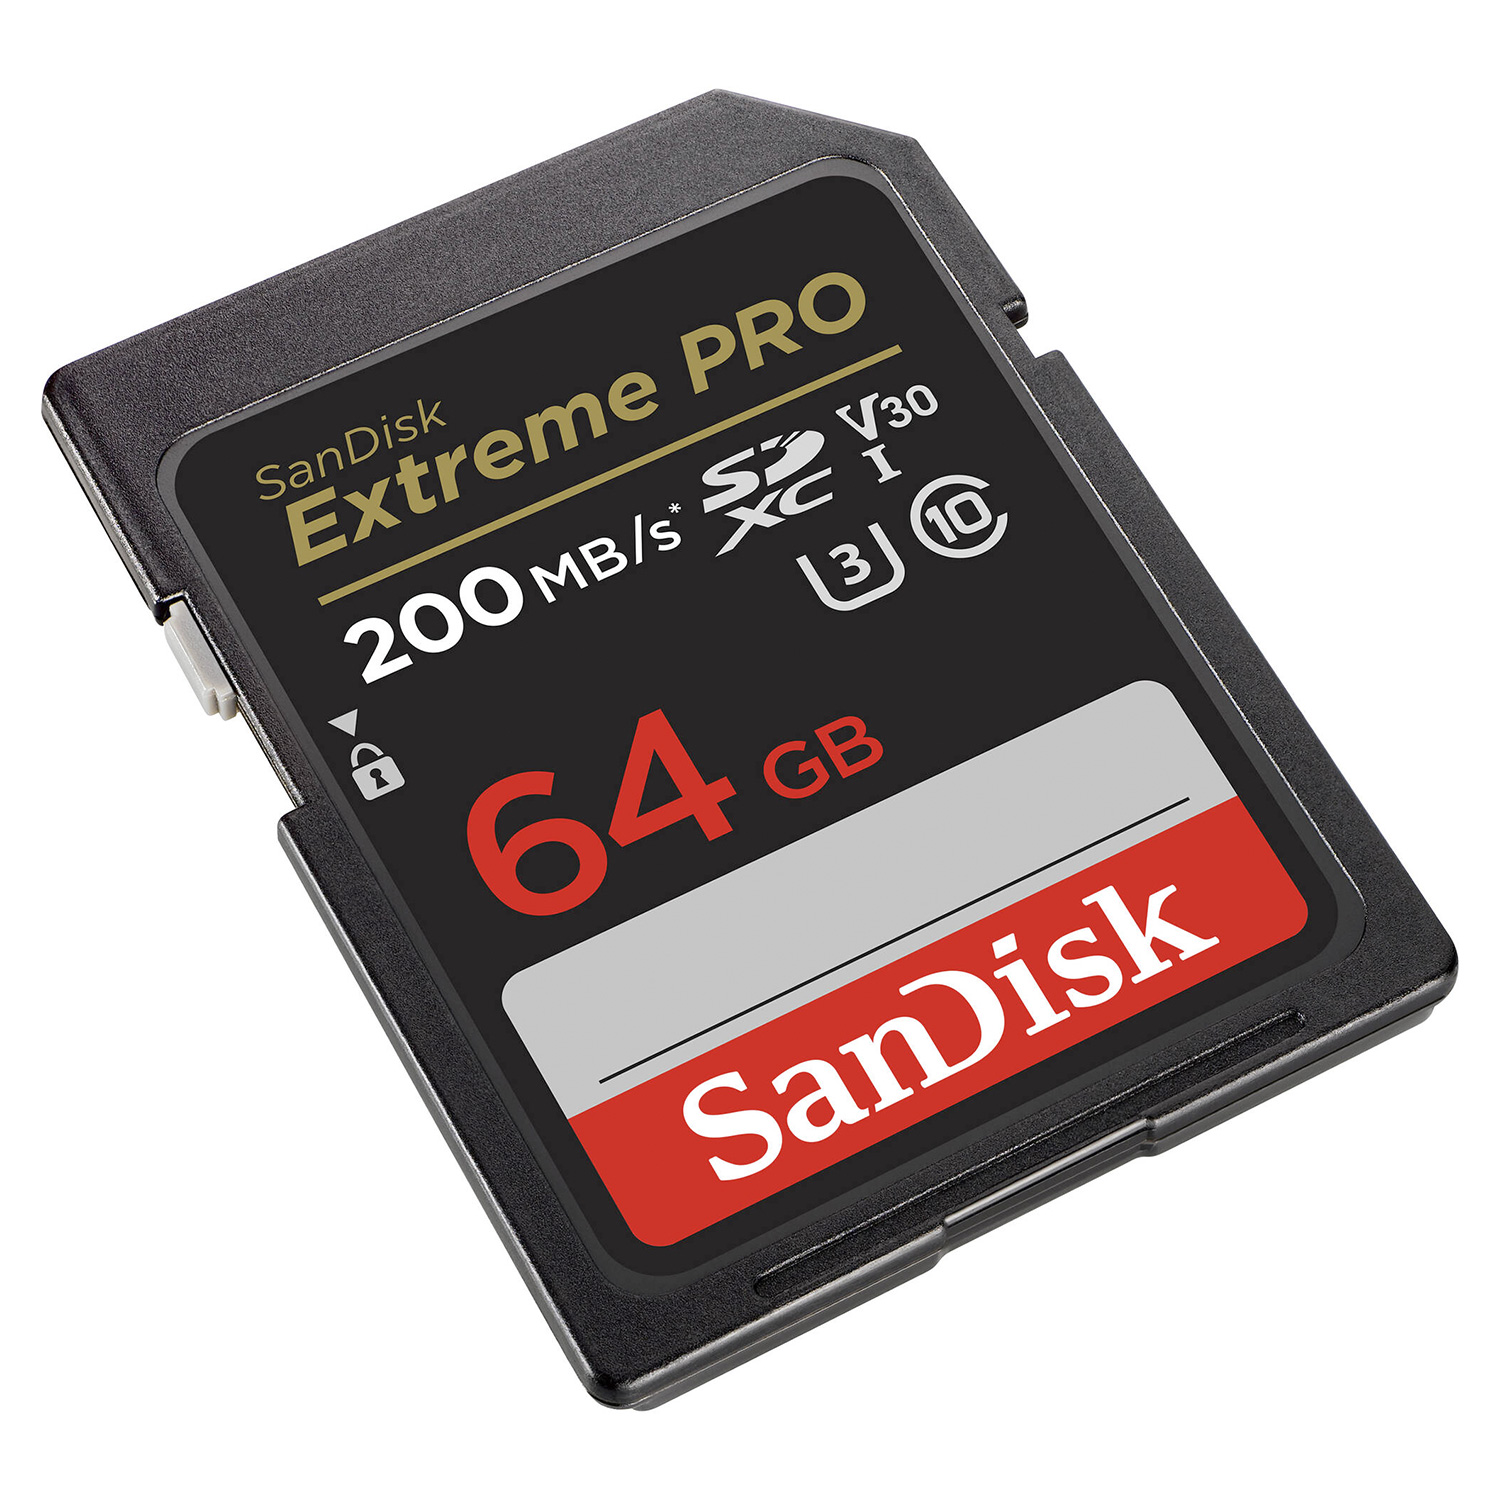 Cartão de Memória Sandisk Extreme Pro 64GB / U3 / 200MBs - (SDSDXXU-064G-GN4IN)
